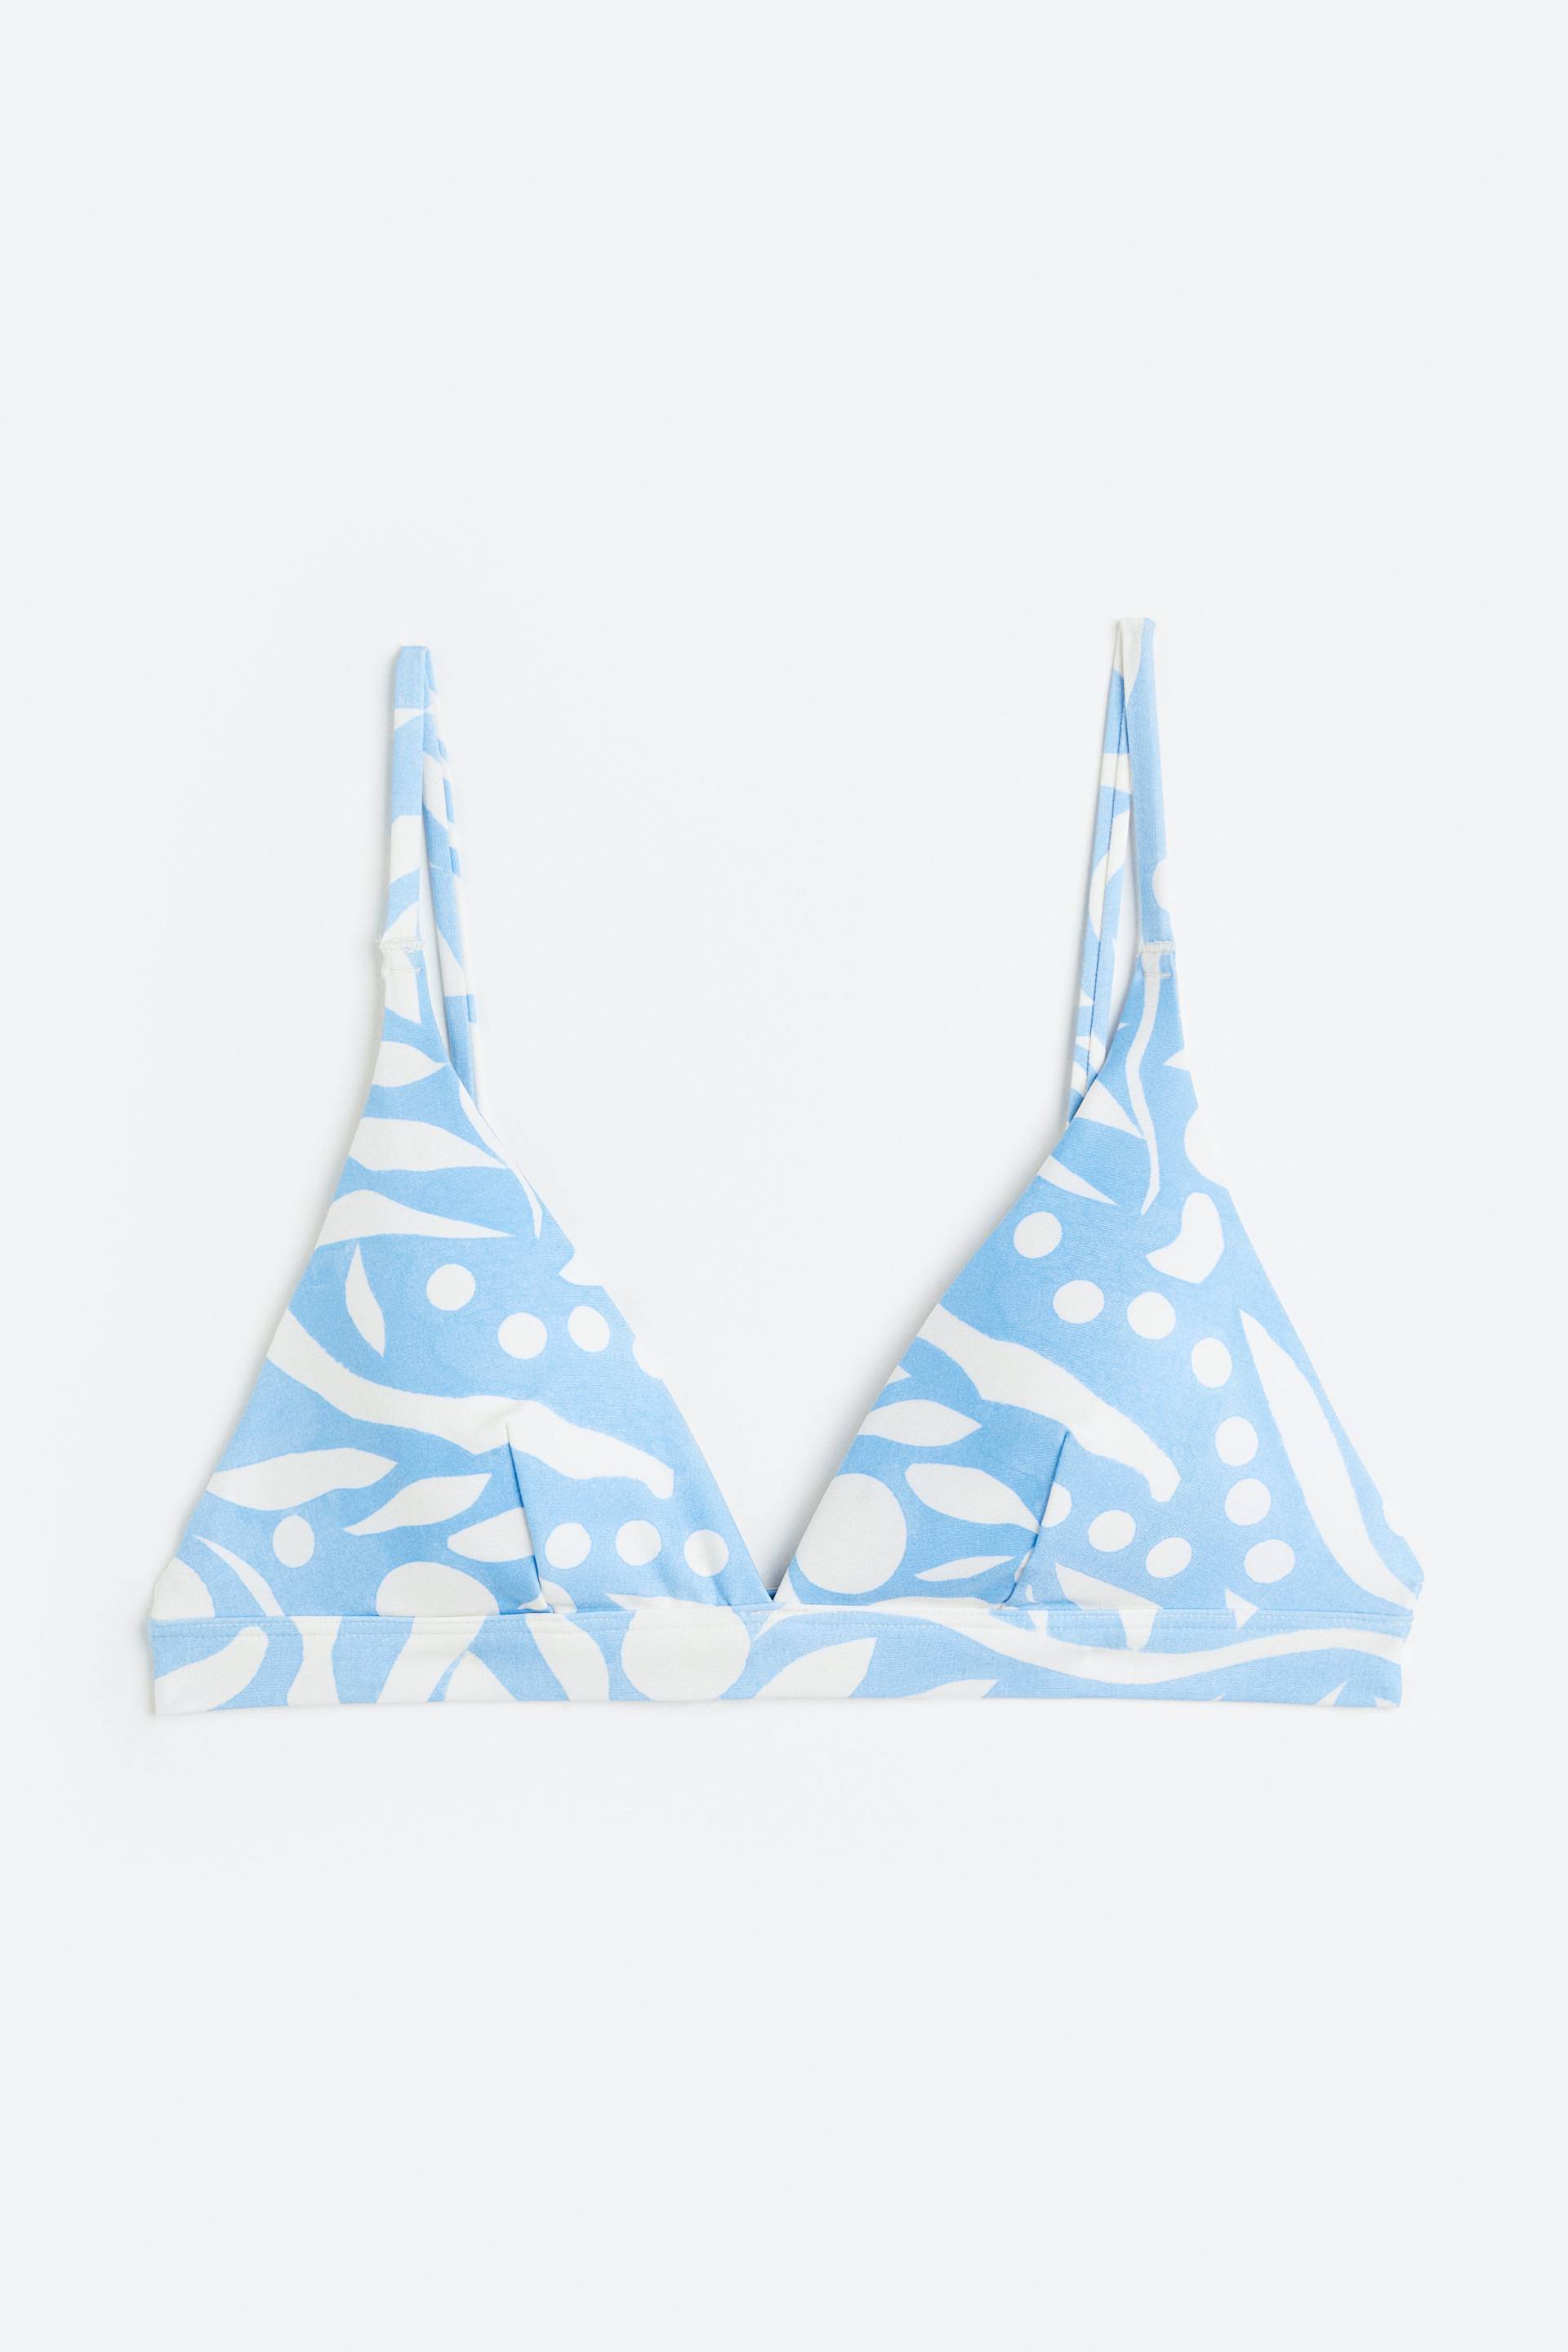 H&M Wattiertes Triangel-Bikinitop Hellblau/Gemustert, Bikini-Oberteil in Größe 34. Farbe: Light blue/patterned von H&M